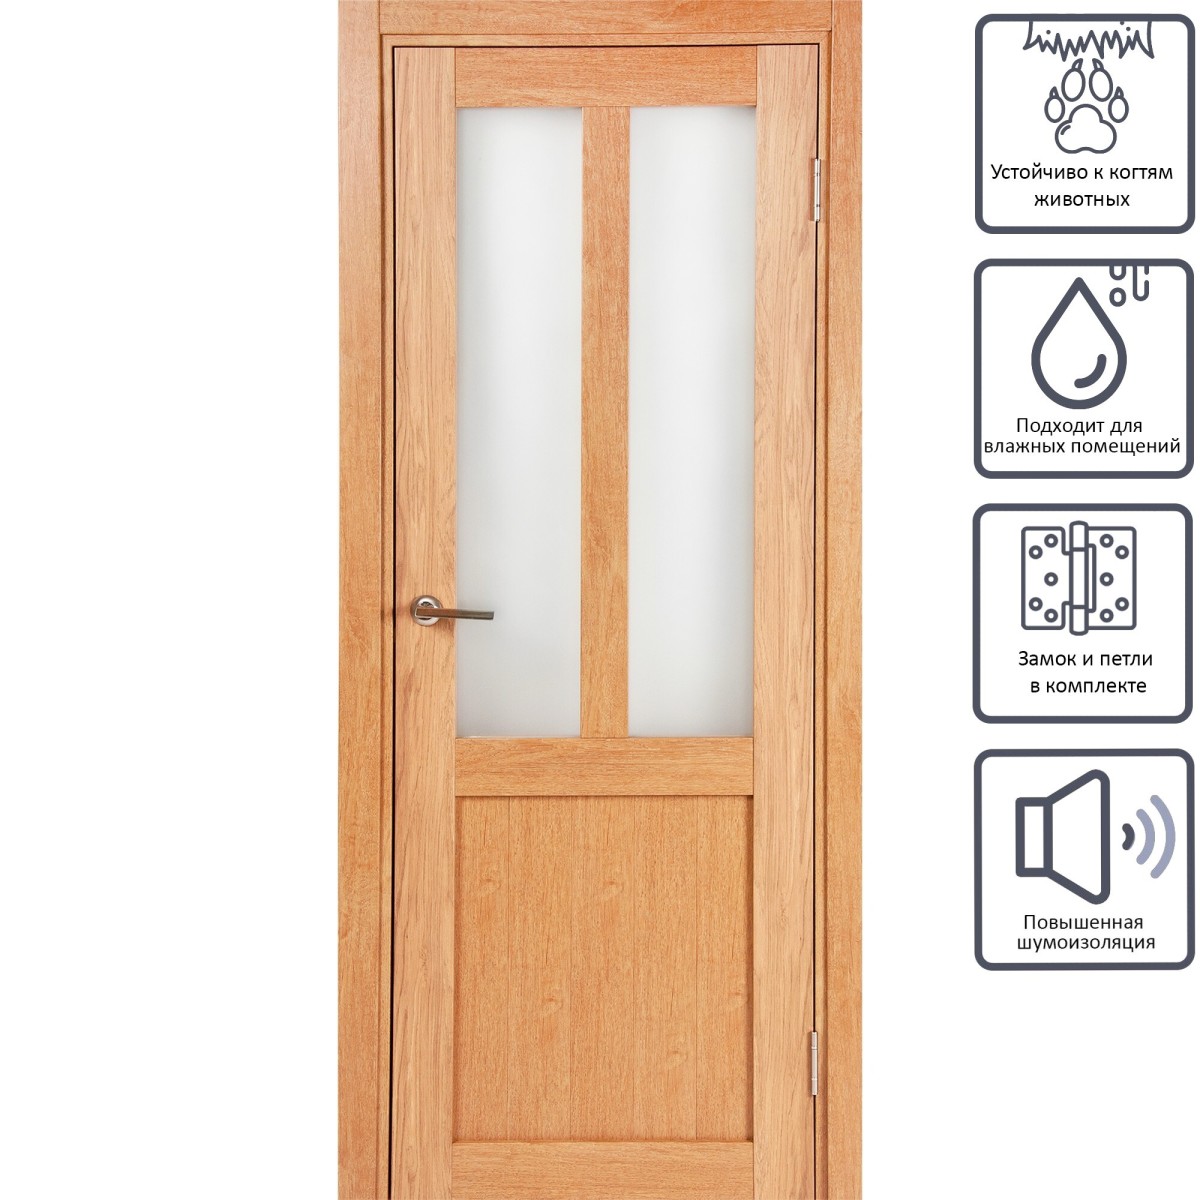 Дверь межкомнатная остеклённая Кантри 90x200 см, ПВХ, цвет дуб арагон, с фурнитурой